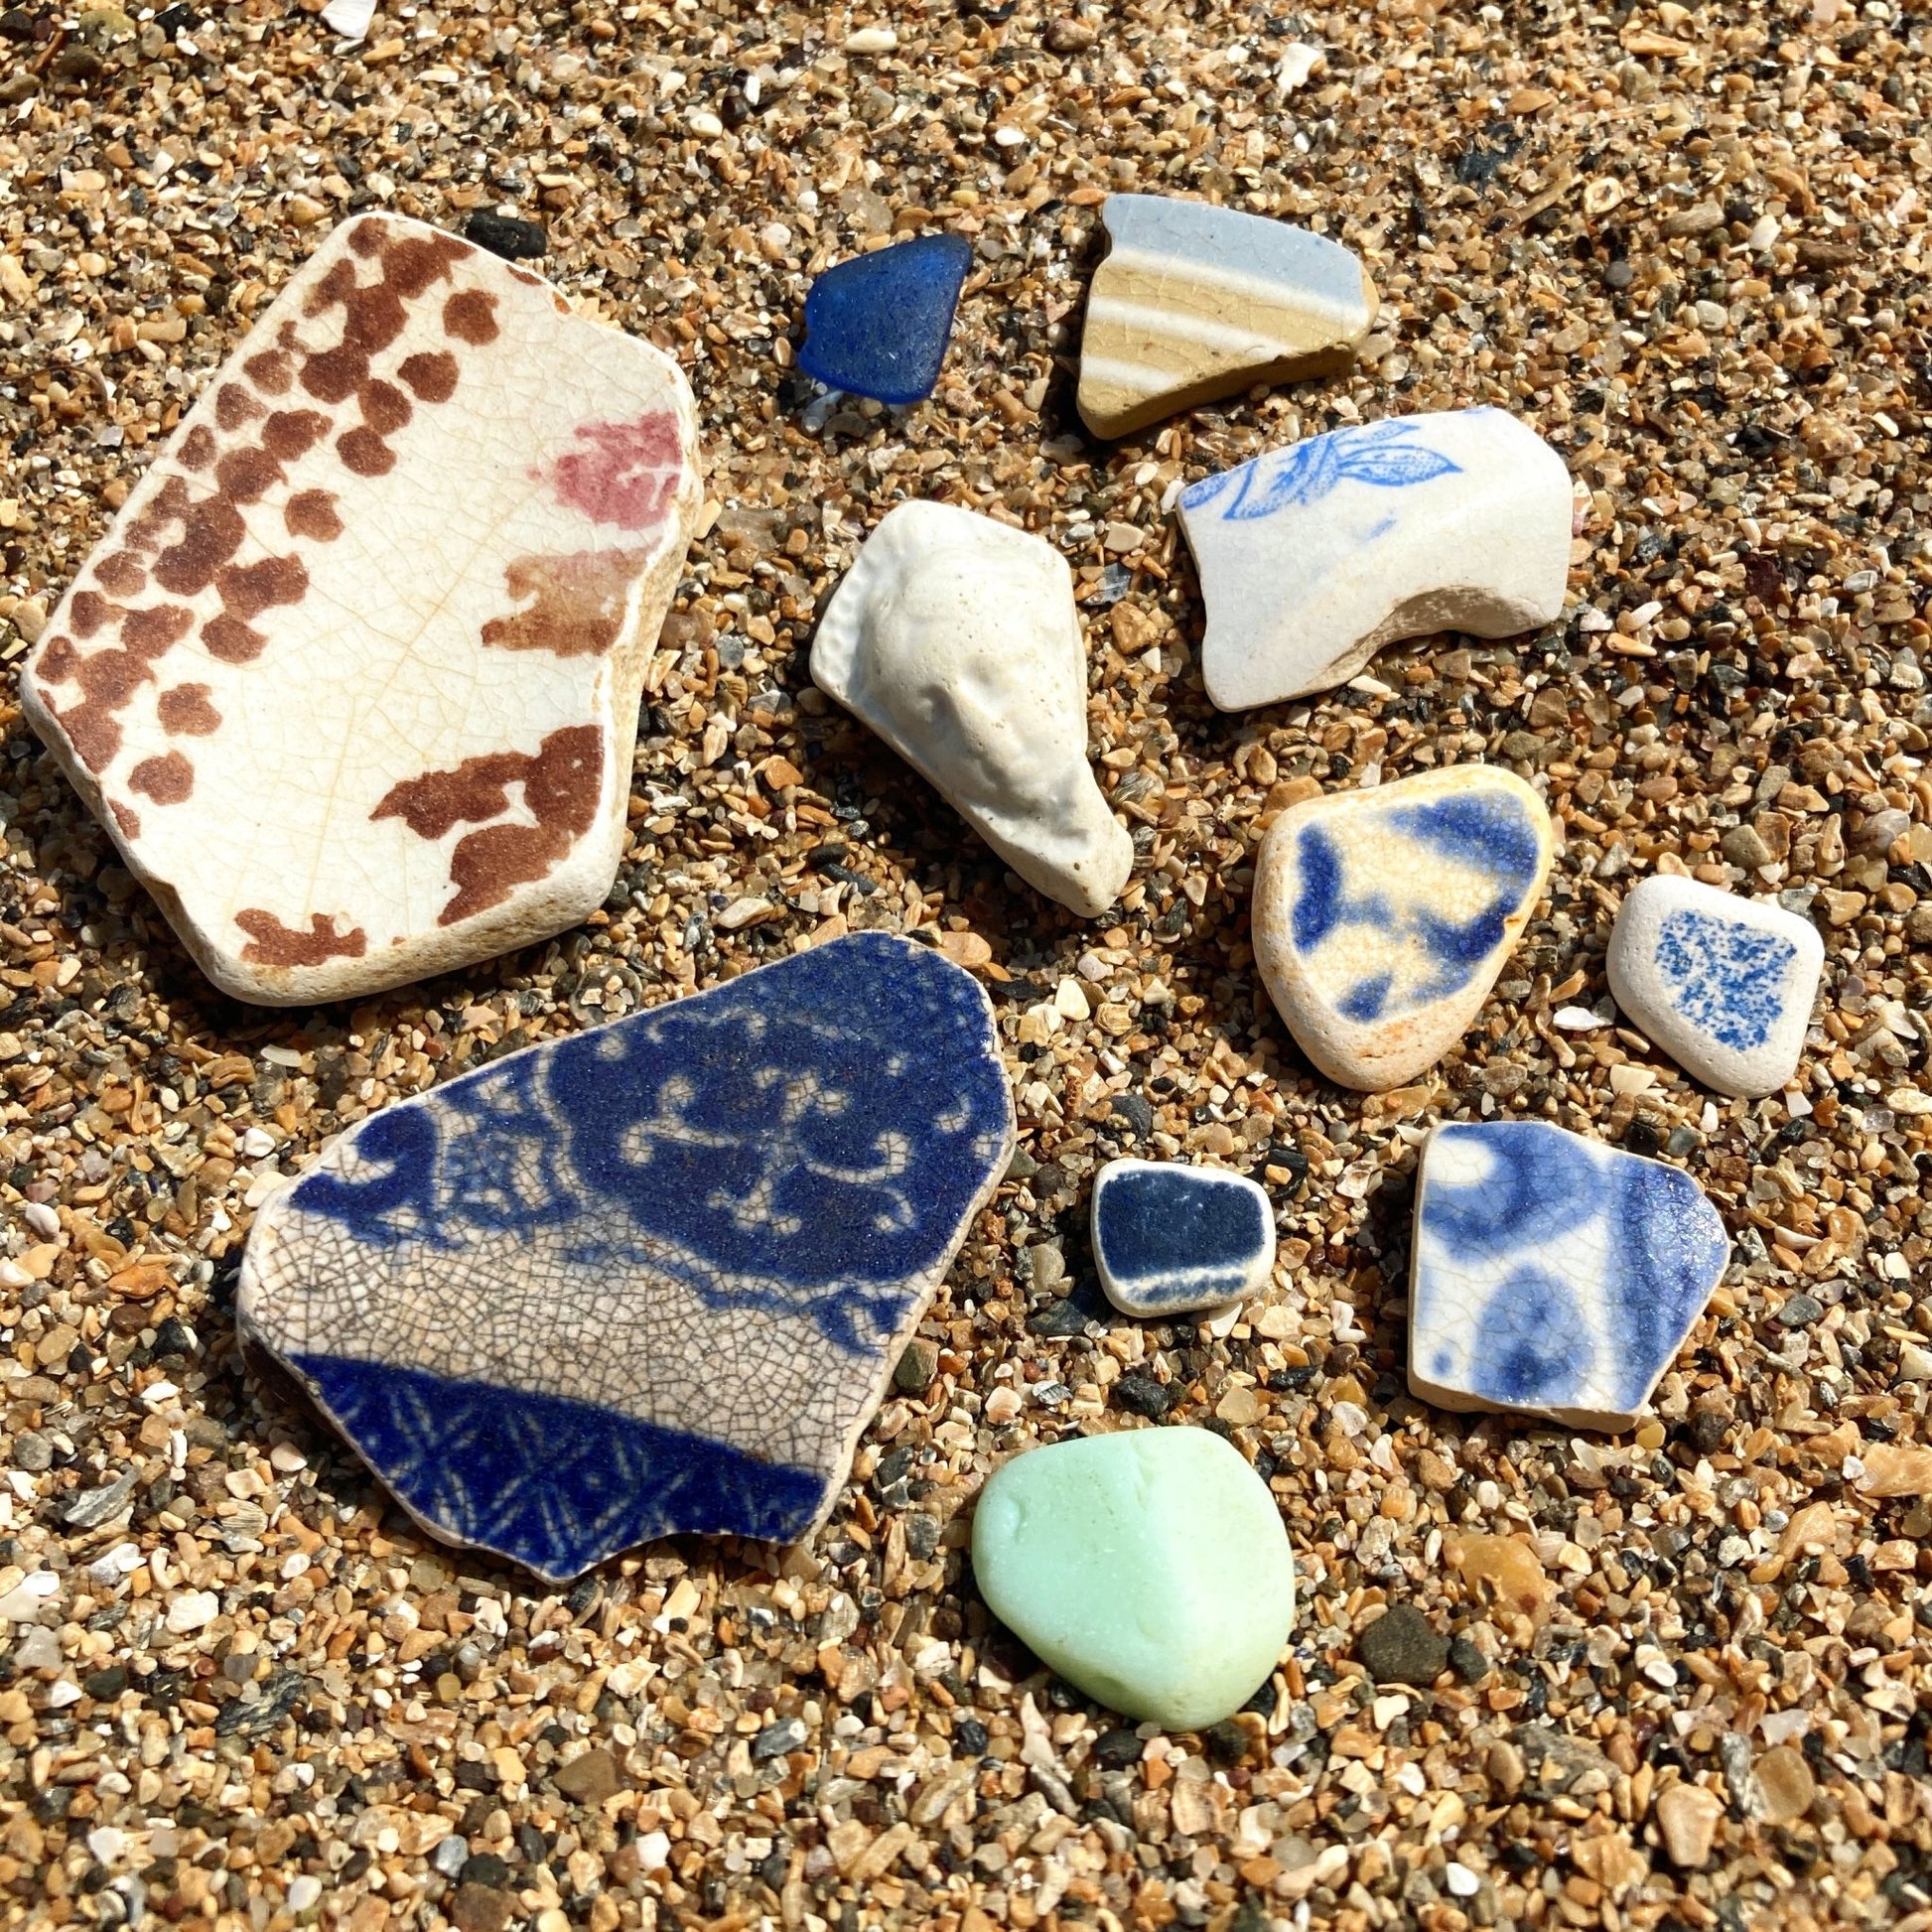 Framed Beachcombing Curiosties - Mosaic Wall Art - Beautiful Blues - Sea Glass, Victorian Pottery, Sculpture, Shells - East Neuk Beach Crafts